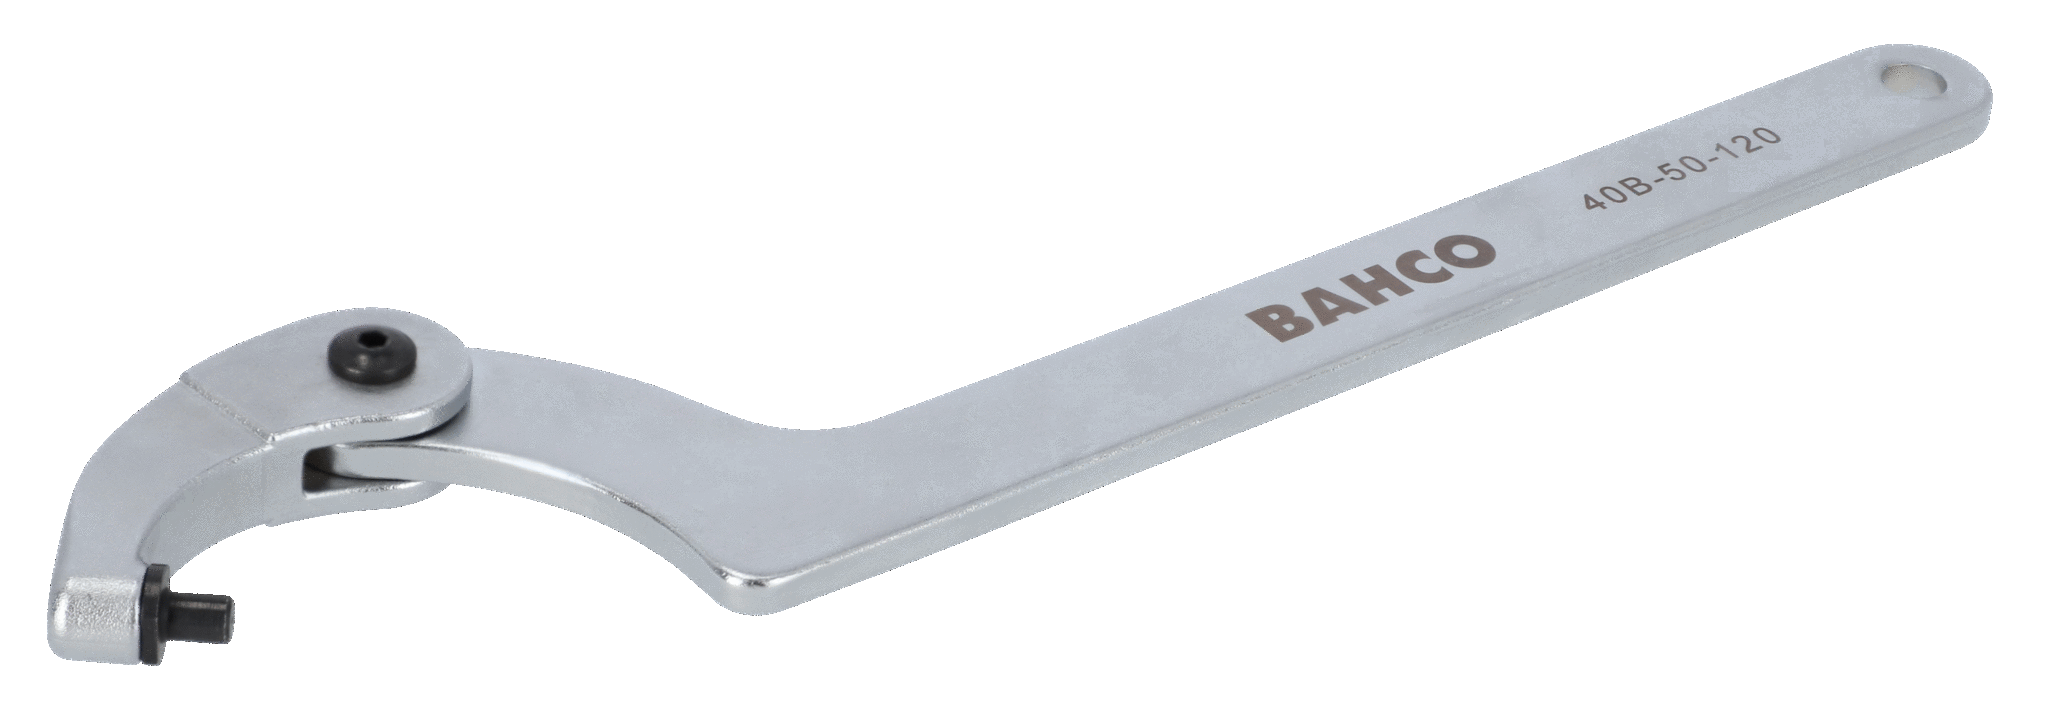 Klucz hakowy przegubowy 19-50 mm z czopem 3.8 mm BAHCO